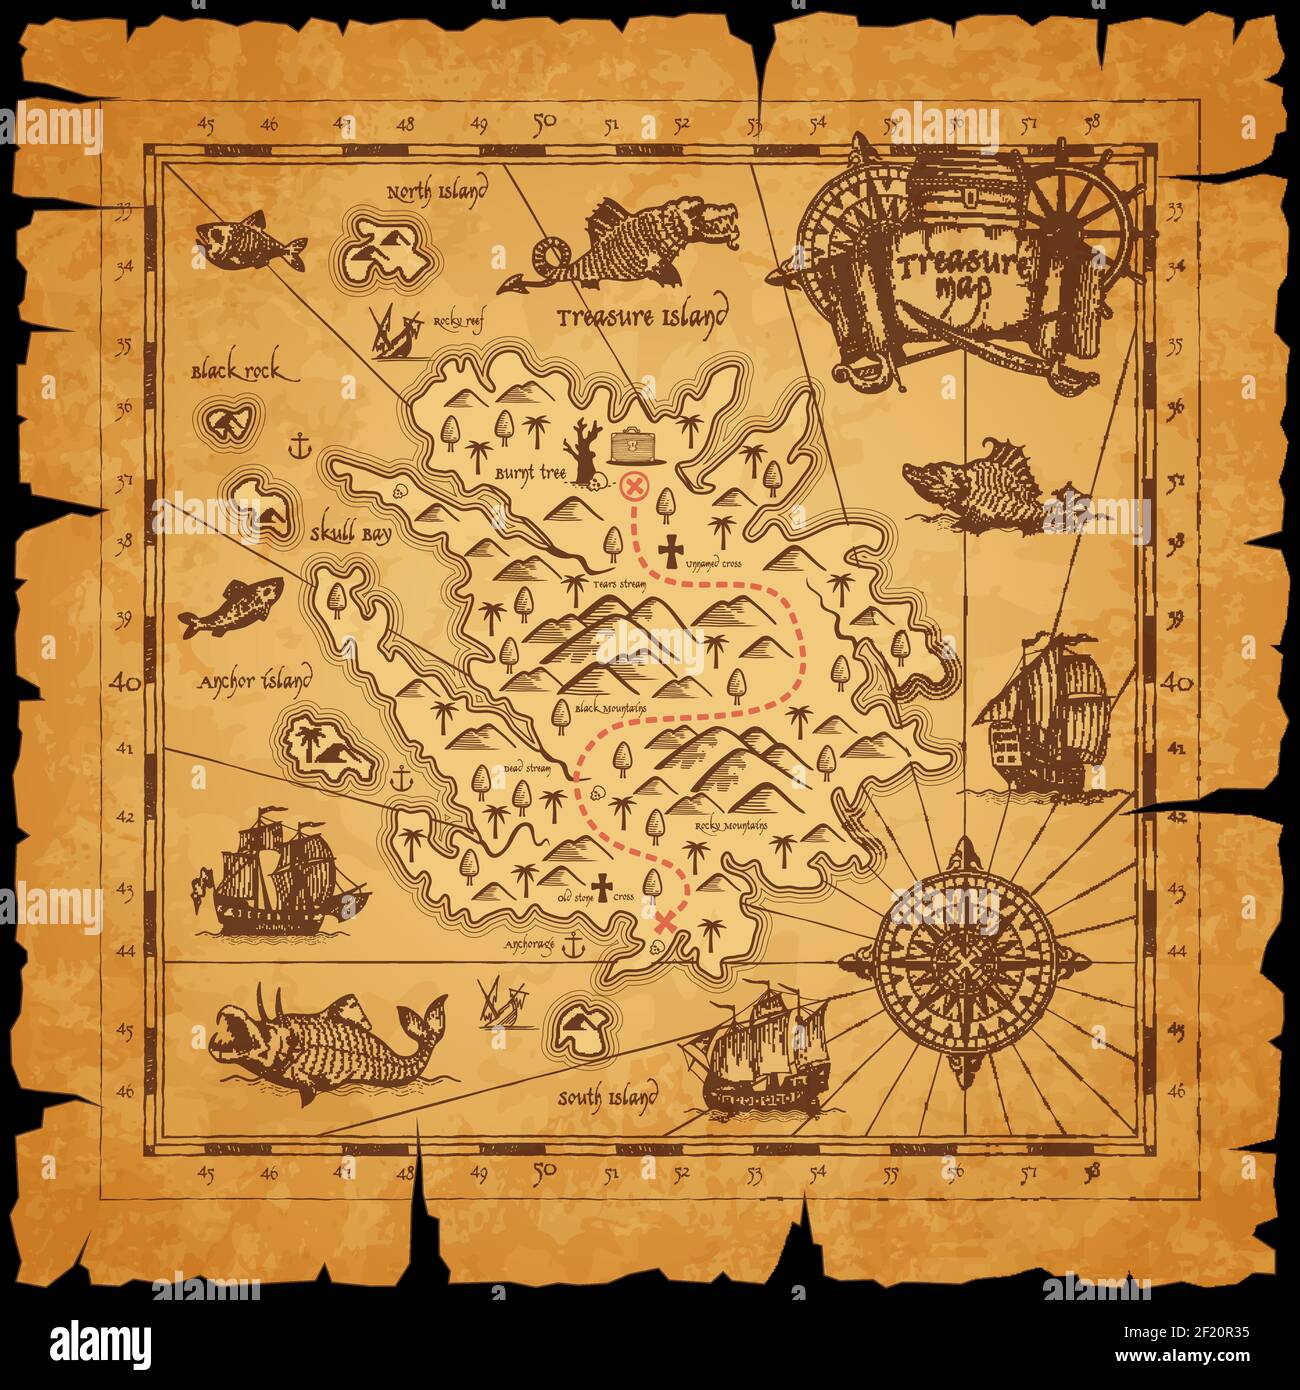 Carte ancienne de l'île des trésors des pirates. Passez la ligne pointillée entre les montagnes, marquez la poitrine avec les trésors et la voile dans l'océan Caravels, les monstres de mer sur pi Illustration de Vecteur